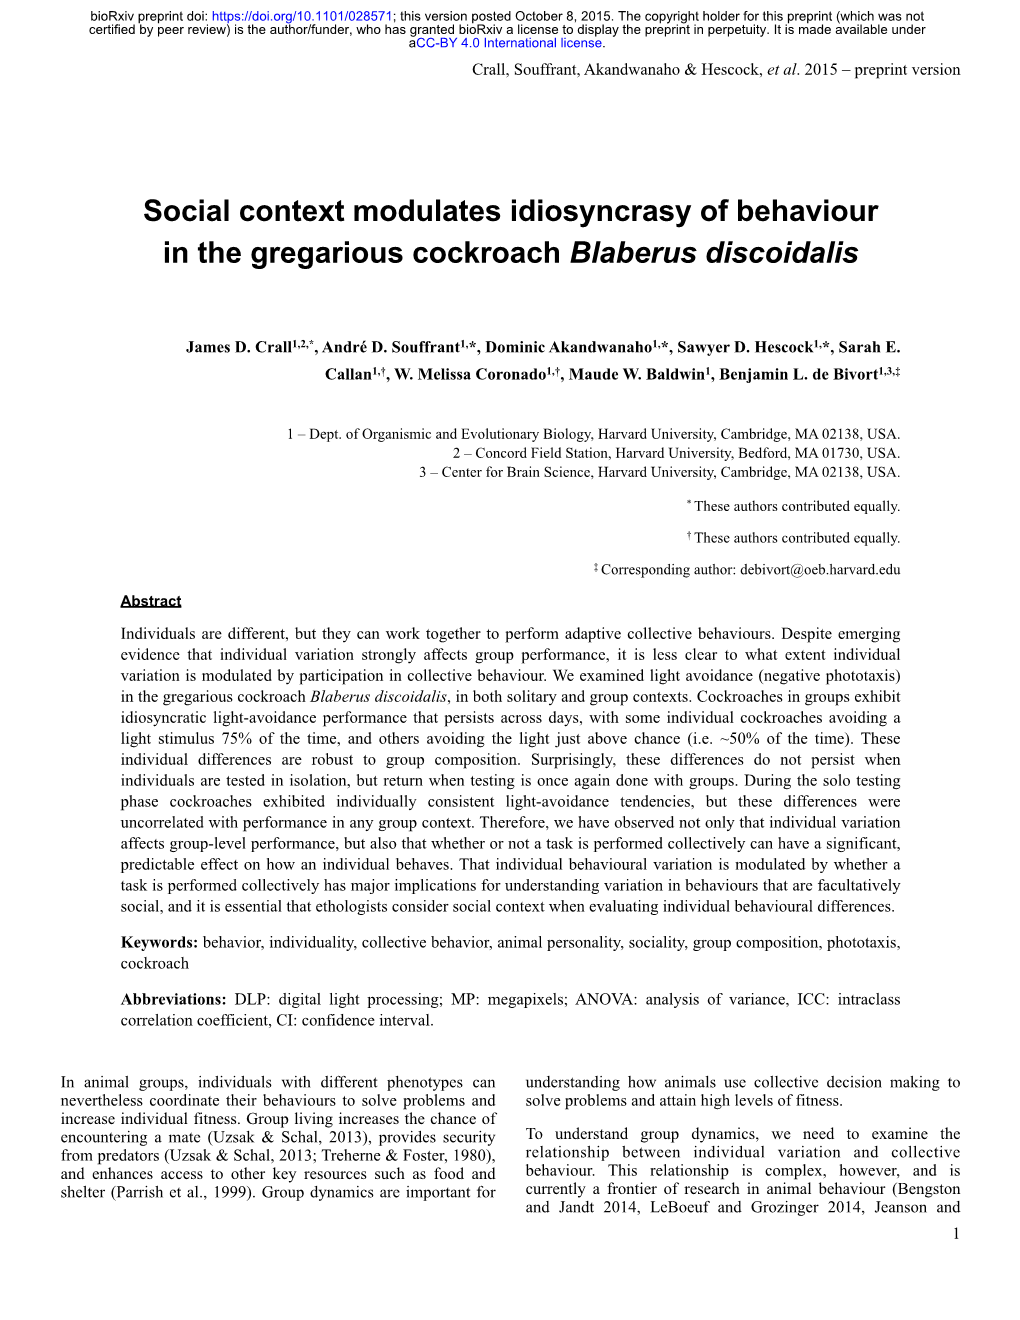 Social Context Modulates Idiosyncrasy of Behaviour in the Gregarious Cockroach Blaberus Discoidalis